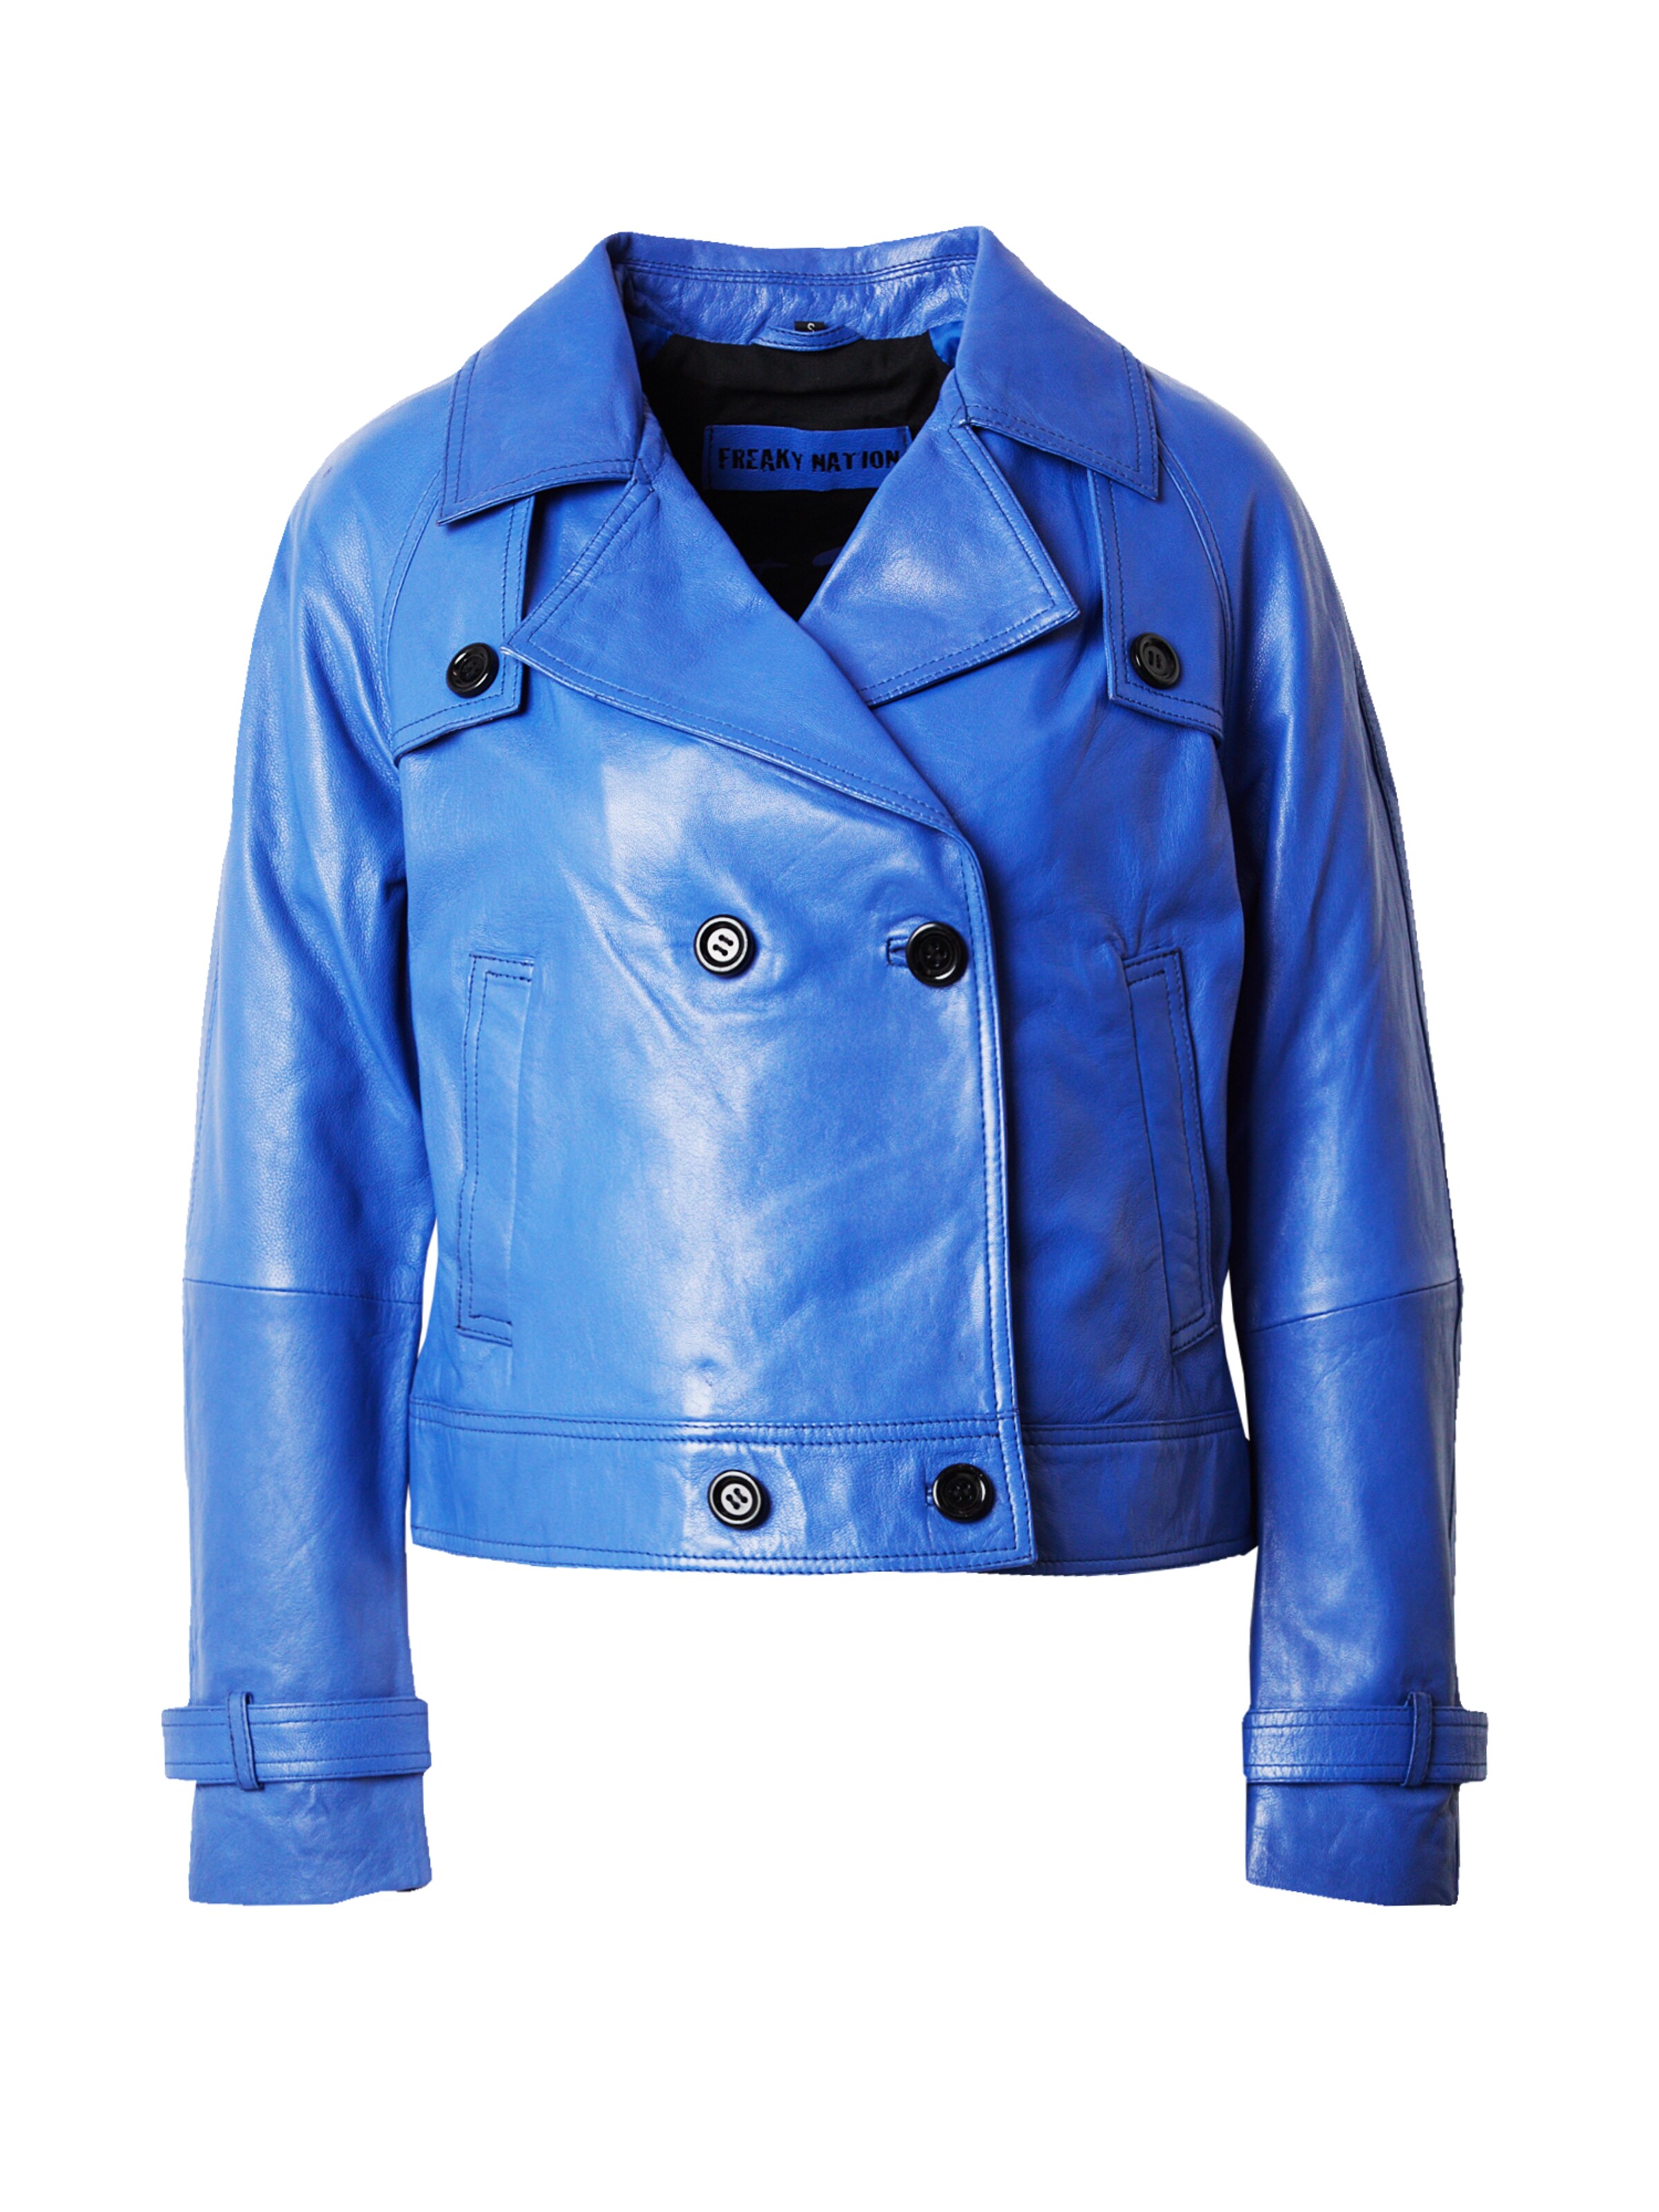 Royal Blue Bomber Jacket | Free Shipping | Leatherings